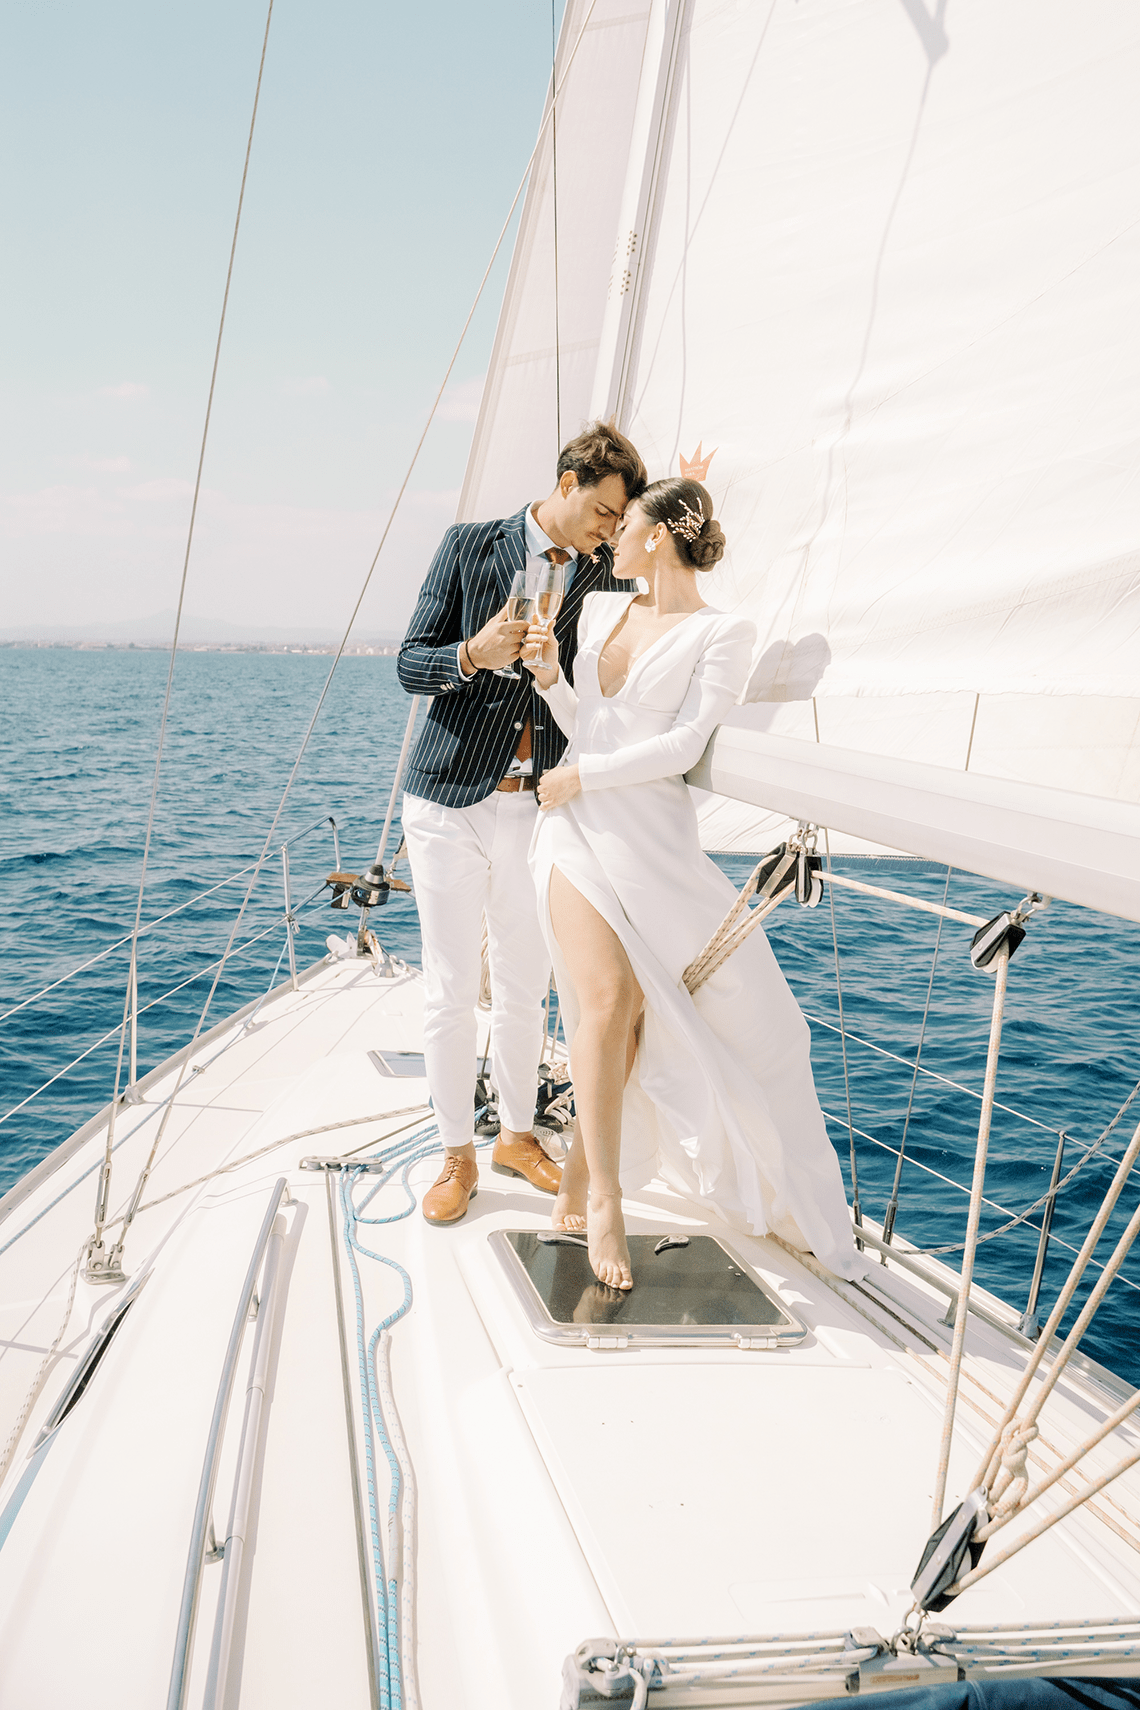 Vintage Greek Sailboat Elopement Inspiration Andreas K. Georgiou 3 - Nền tảng đăng ký đám cưới tốt nhất cho Quà tặng, Tiền mặt, Du lịch & Từ thiện